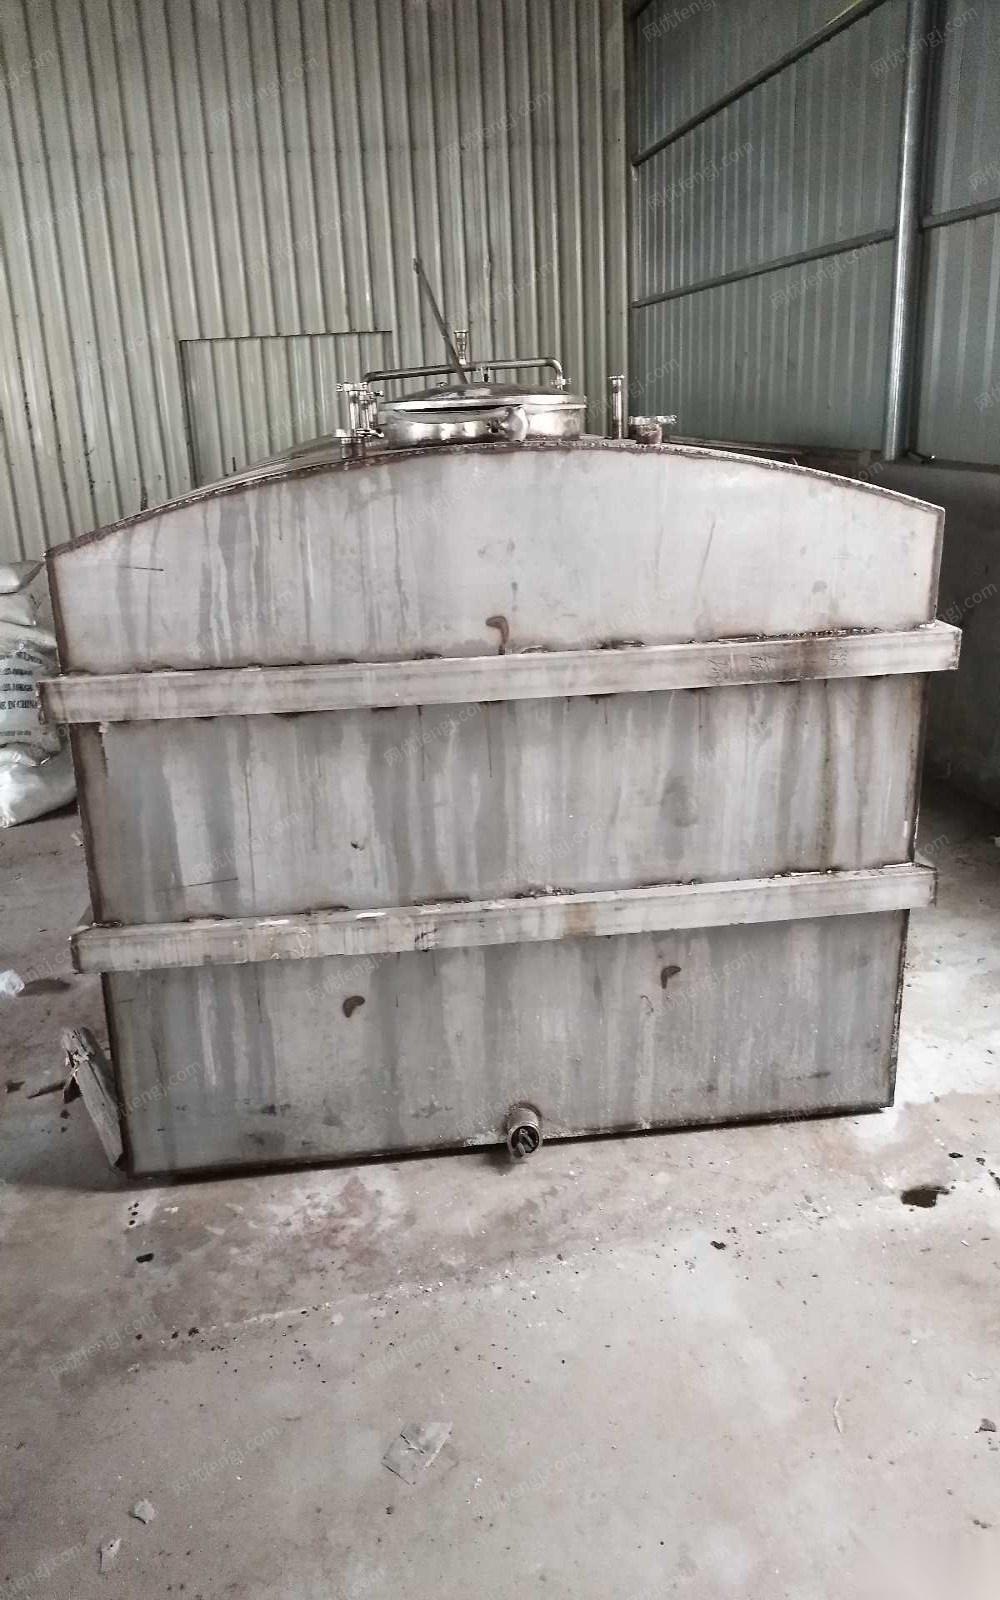 福建宁德出售1个12方304不锈钢车载海水罐  出售价2万多元.